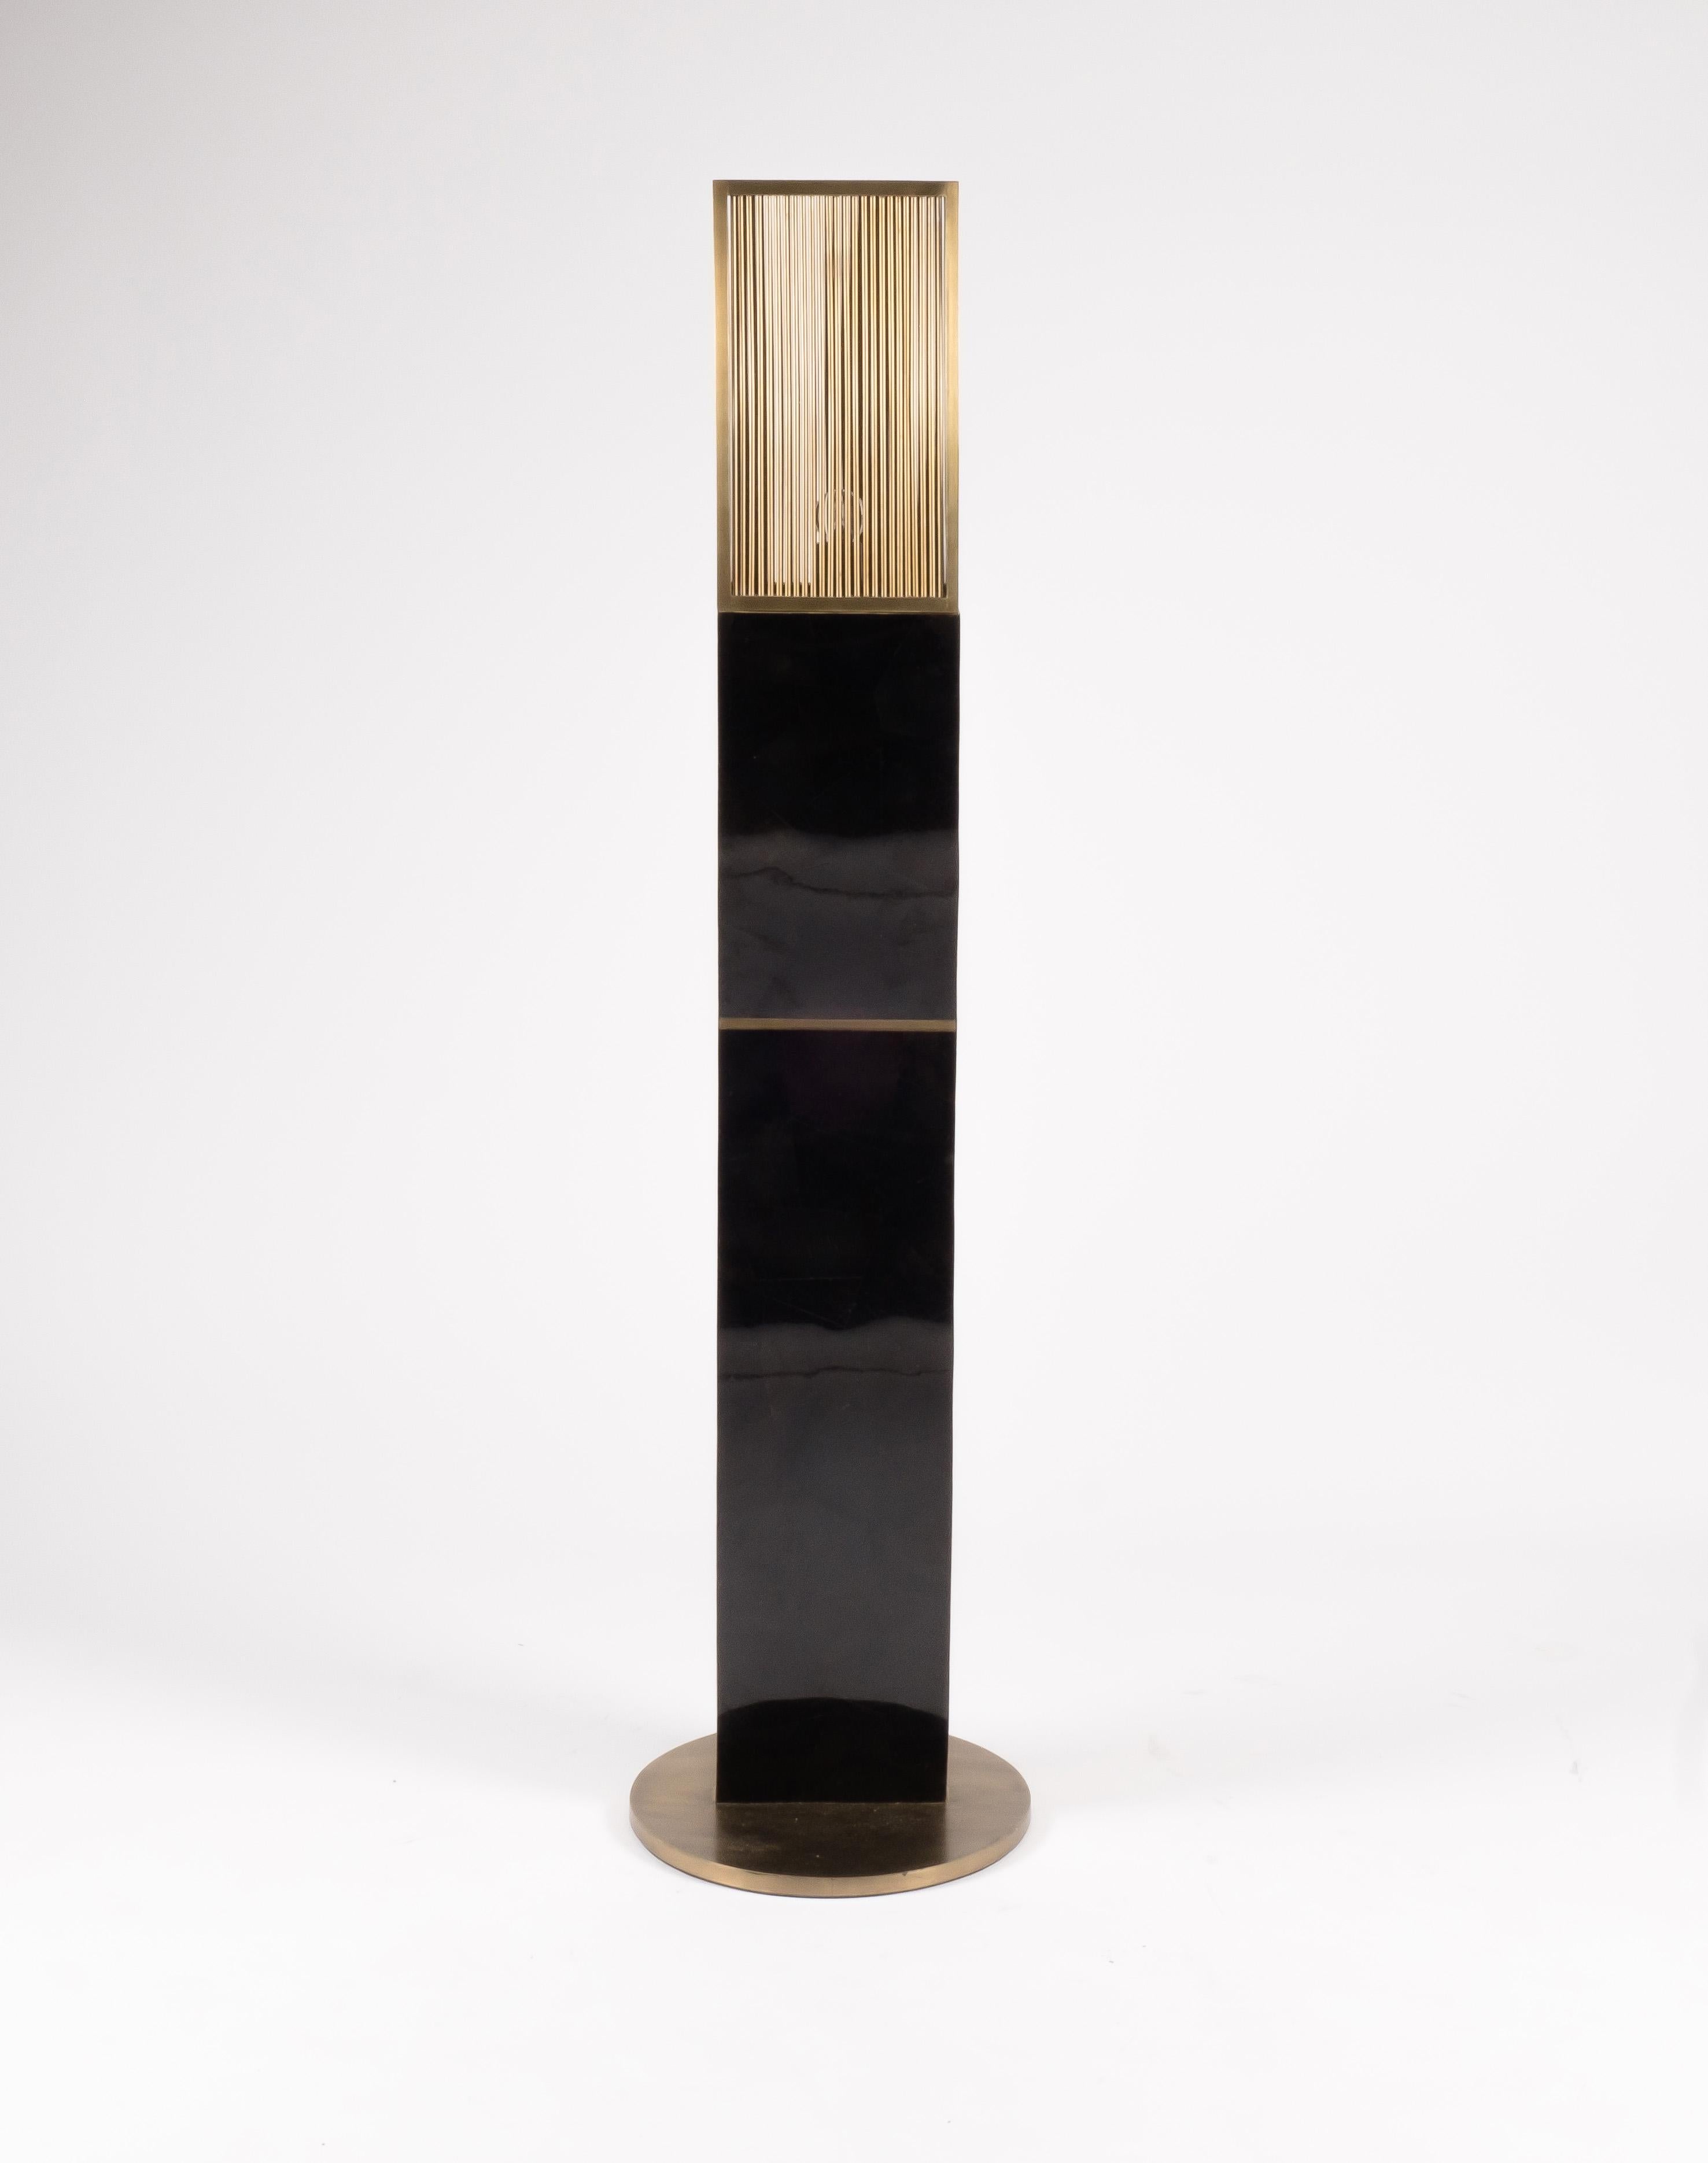 Die Kifu Paris Medium Propeller Uplight Stehleuchte in schwarzer Stiftschale ist ein skulpturales Beleuchtungsobjekt und in zwei weiteren Größen erhältlich, die separat verkauft werden (Bilder am Ende der Folie). Der luxuriöse Metallschirm erzeugt